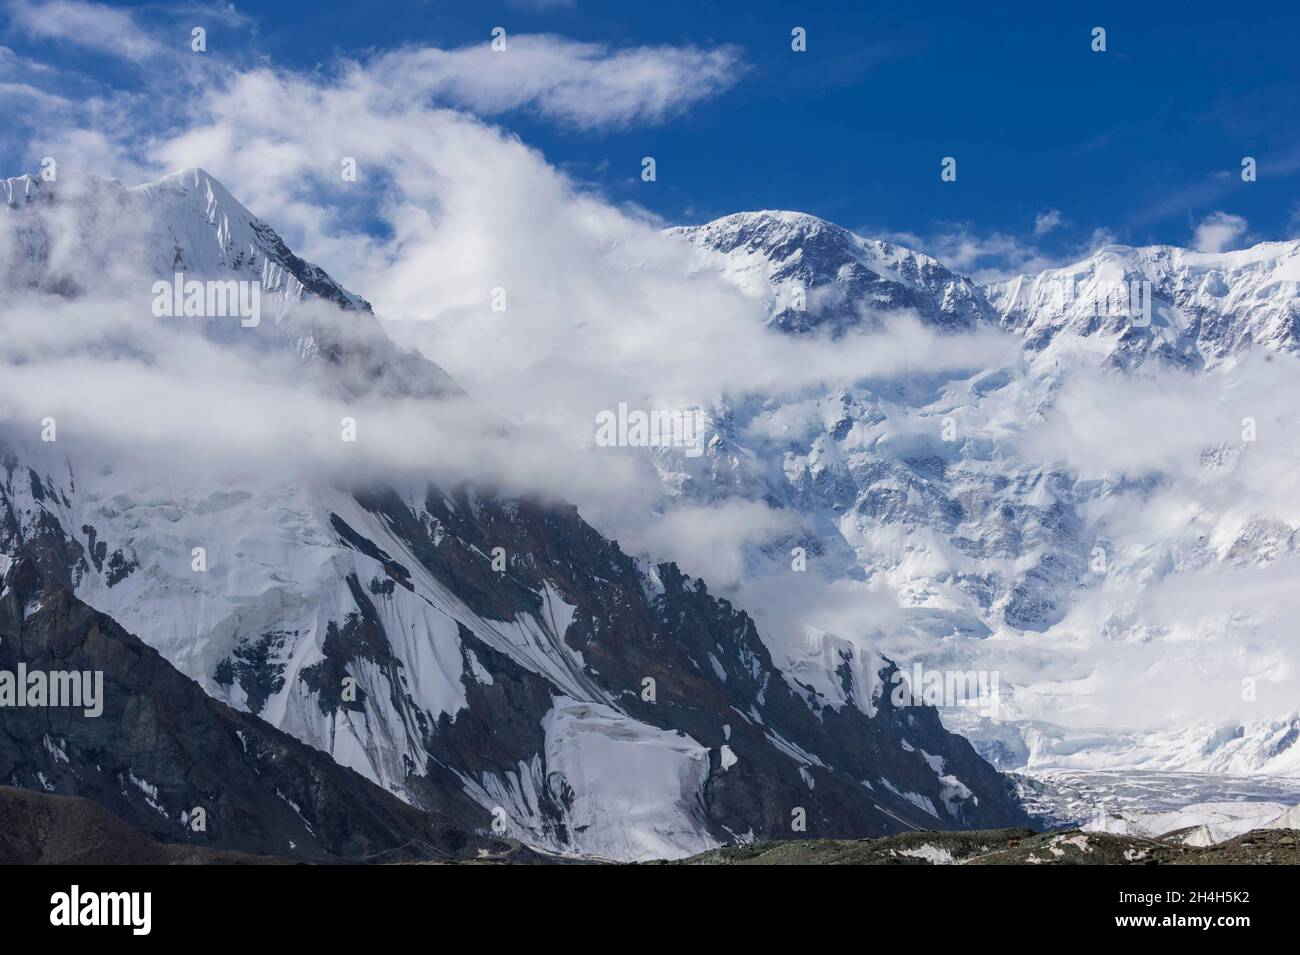 Massif du glacier Pabeda-Khan Tengry, vue depuis le camp de base, montagnes du Tien Shan central, frontière avec le Kirghizistan un, le Kirghizistan, la Chine Banque D'Images